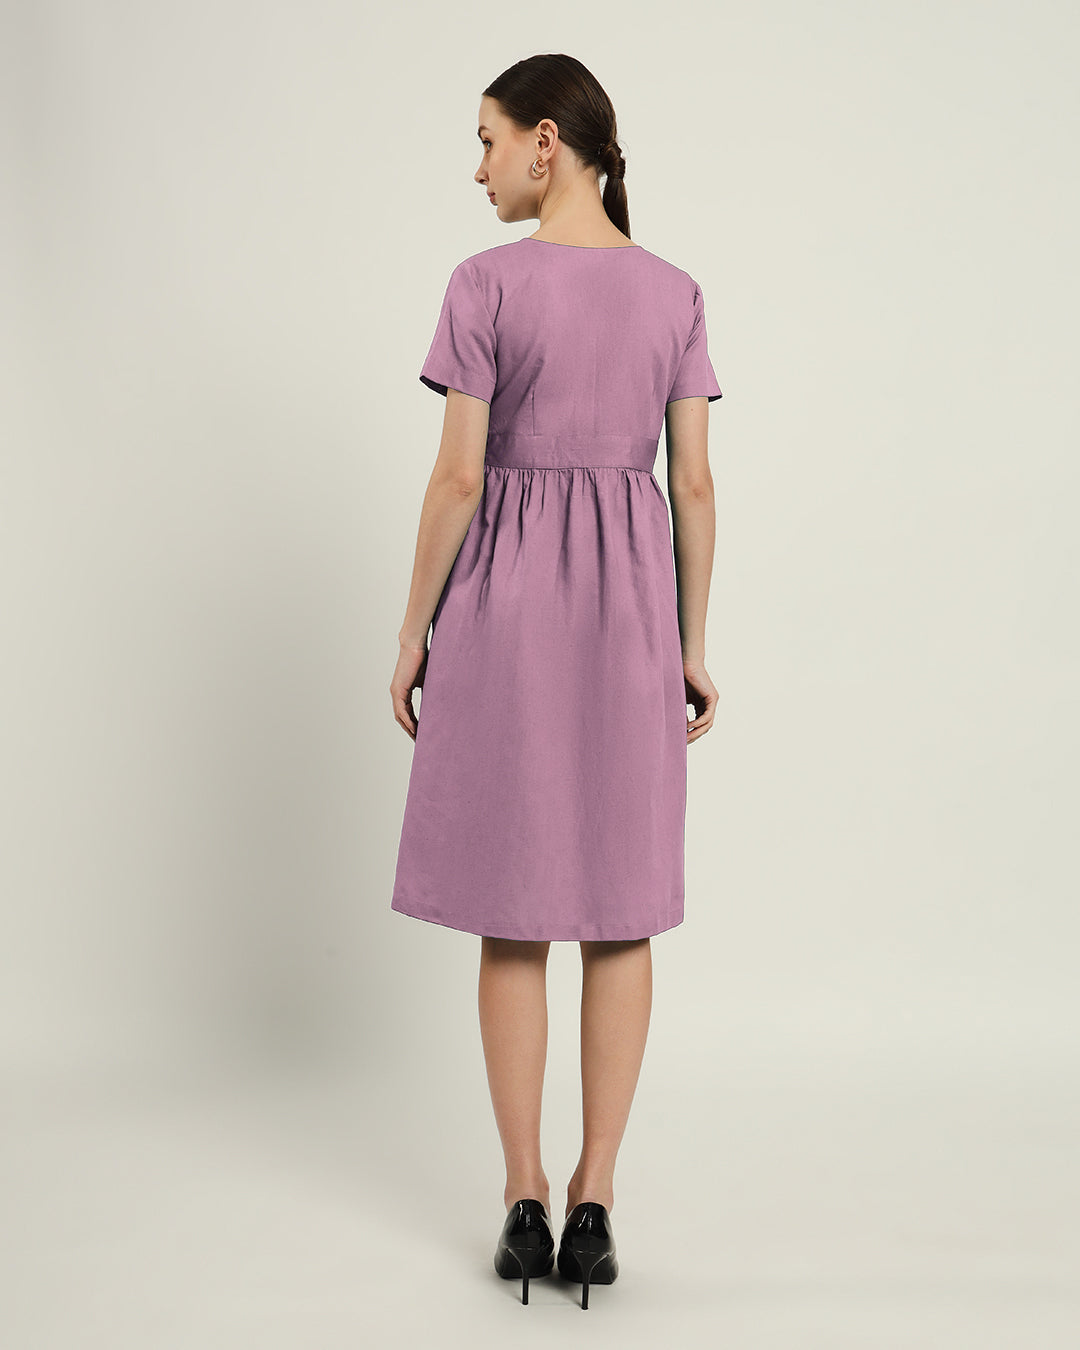 The Miyoshi Purple Swirl Dress